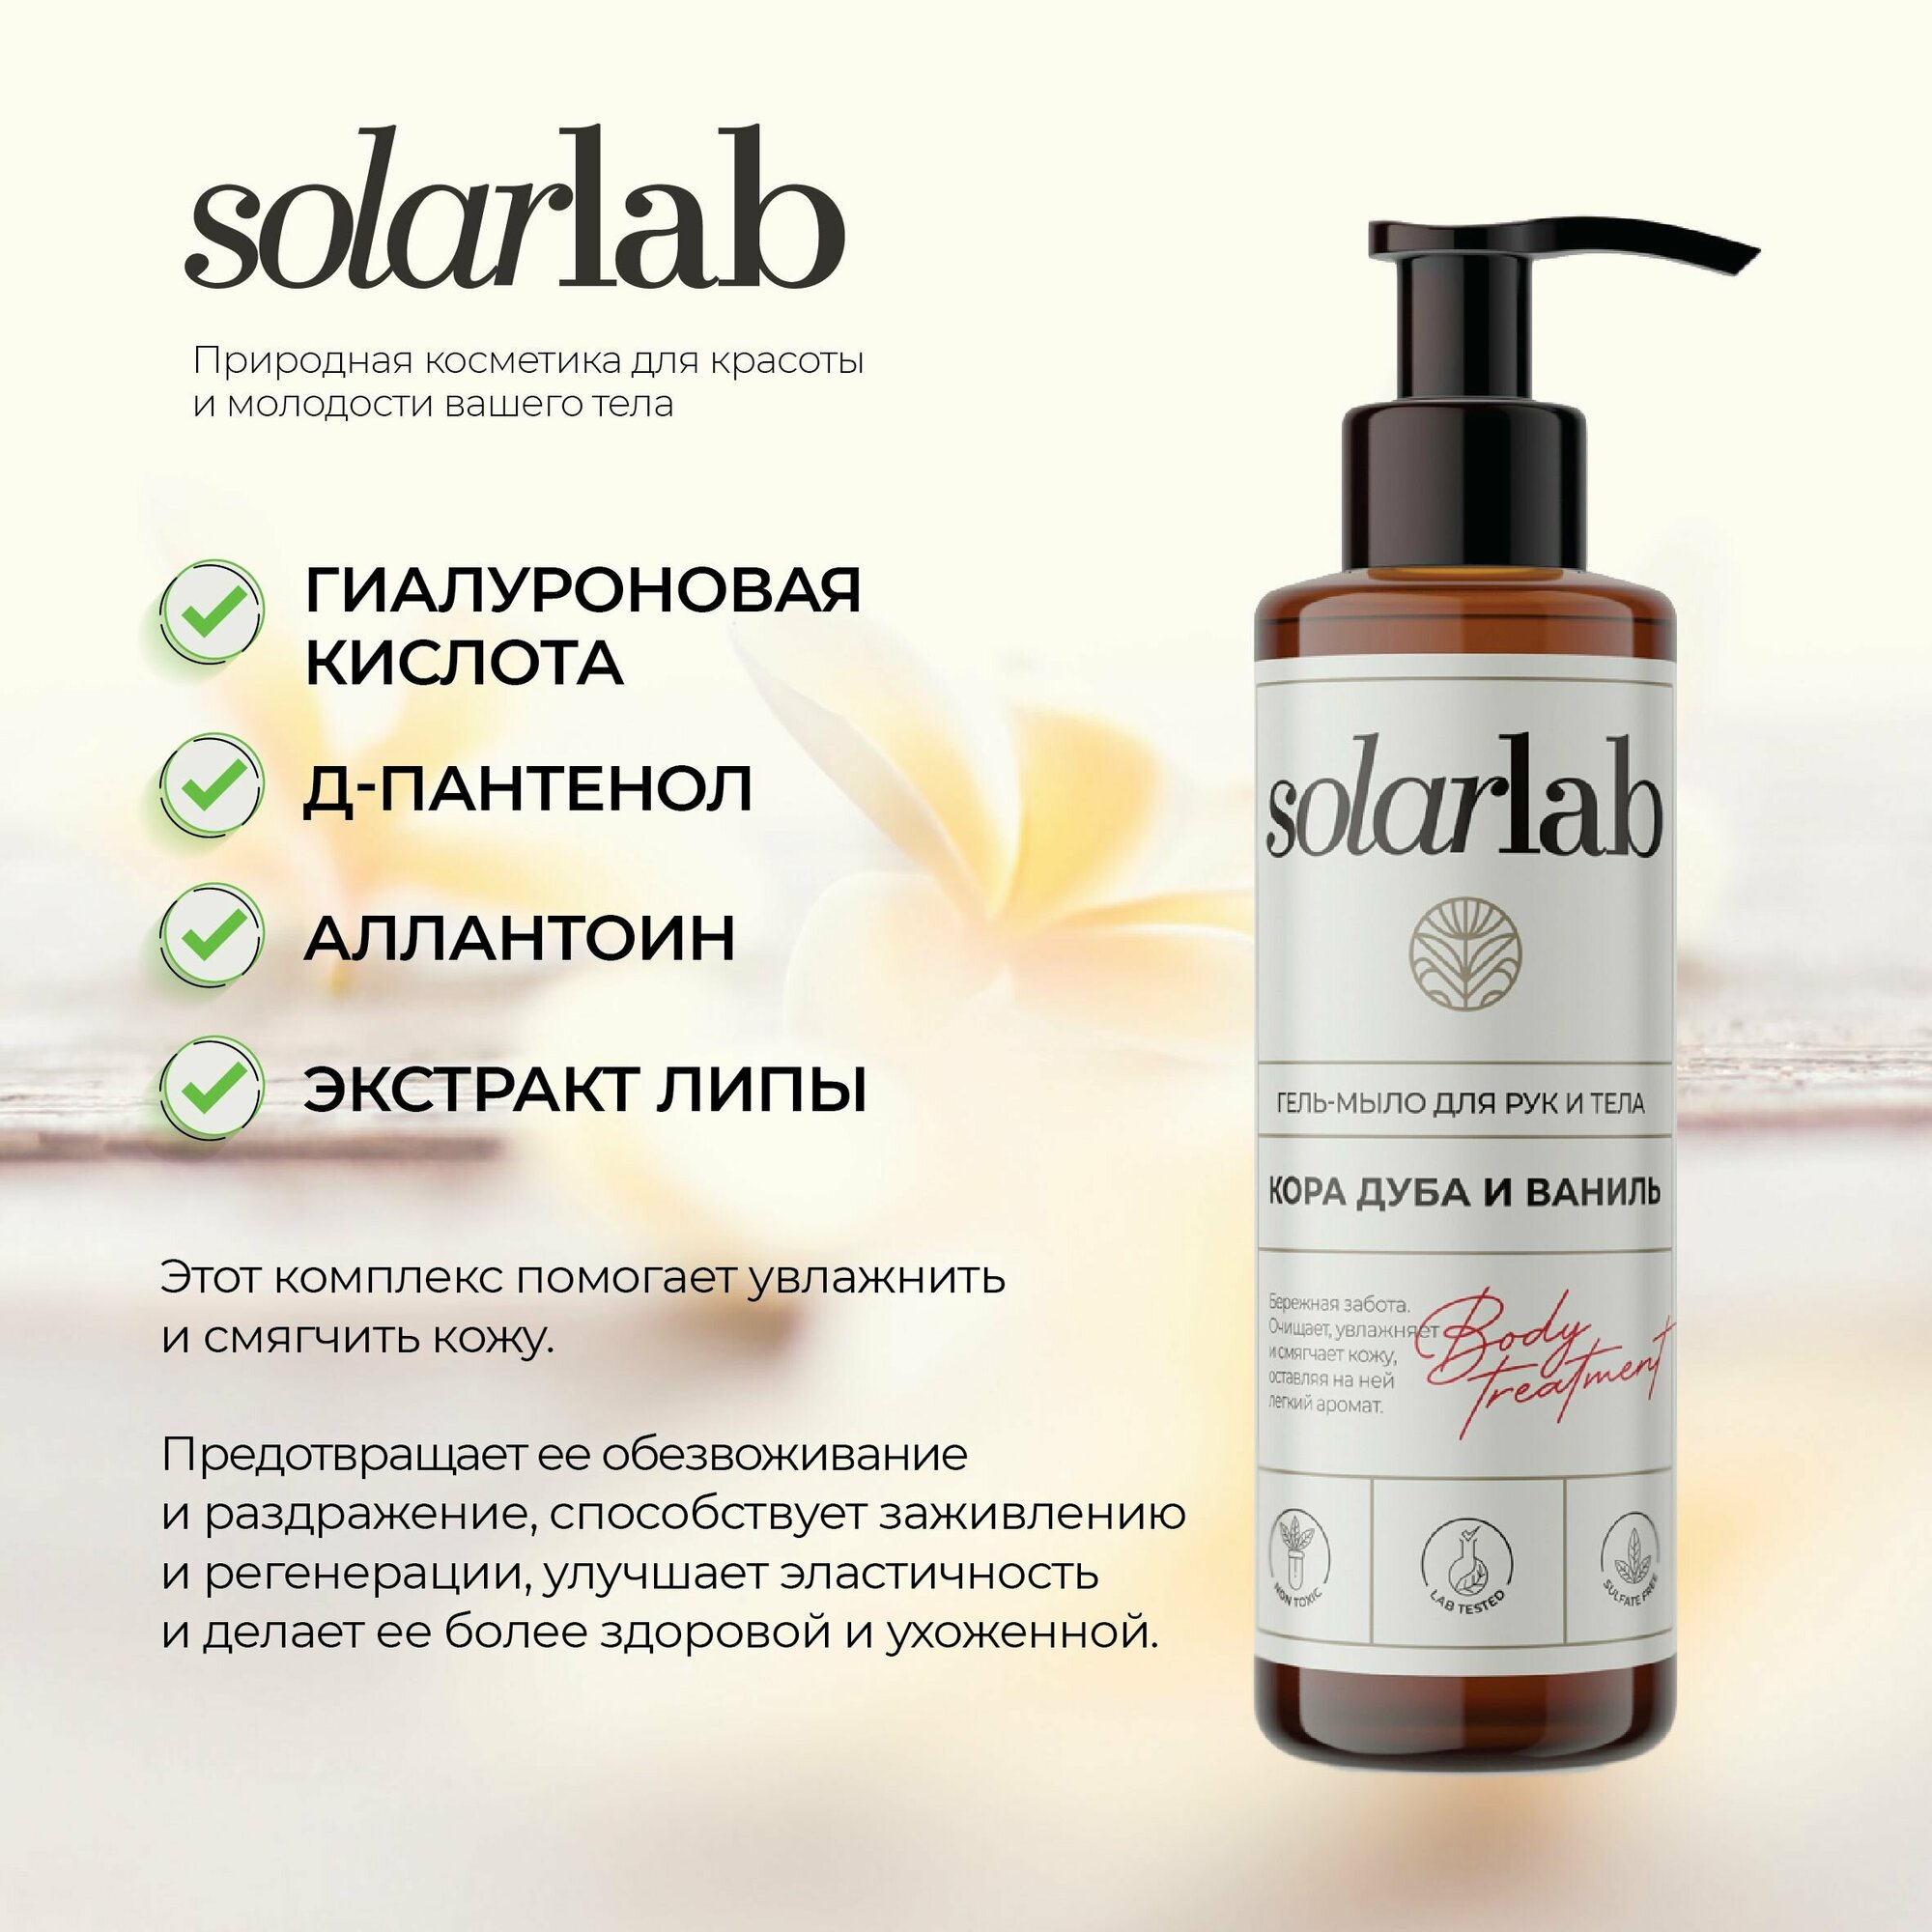 Гель-мыло для душа SolarLab cosmetics парфюмированное, питательное, деликатно очищает и увлажняет кожу. Селективный аромат.